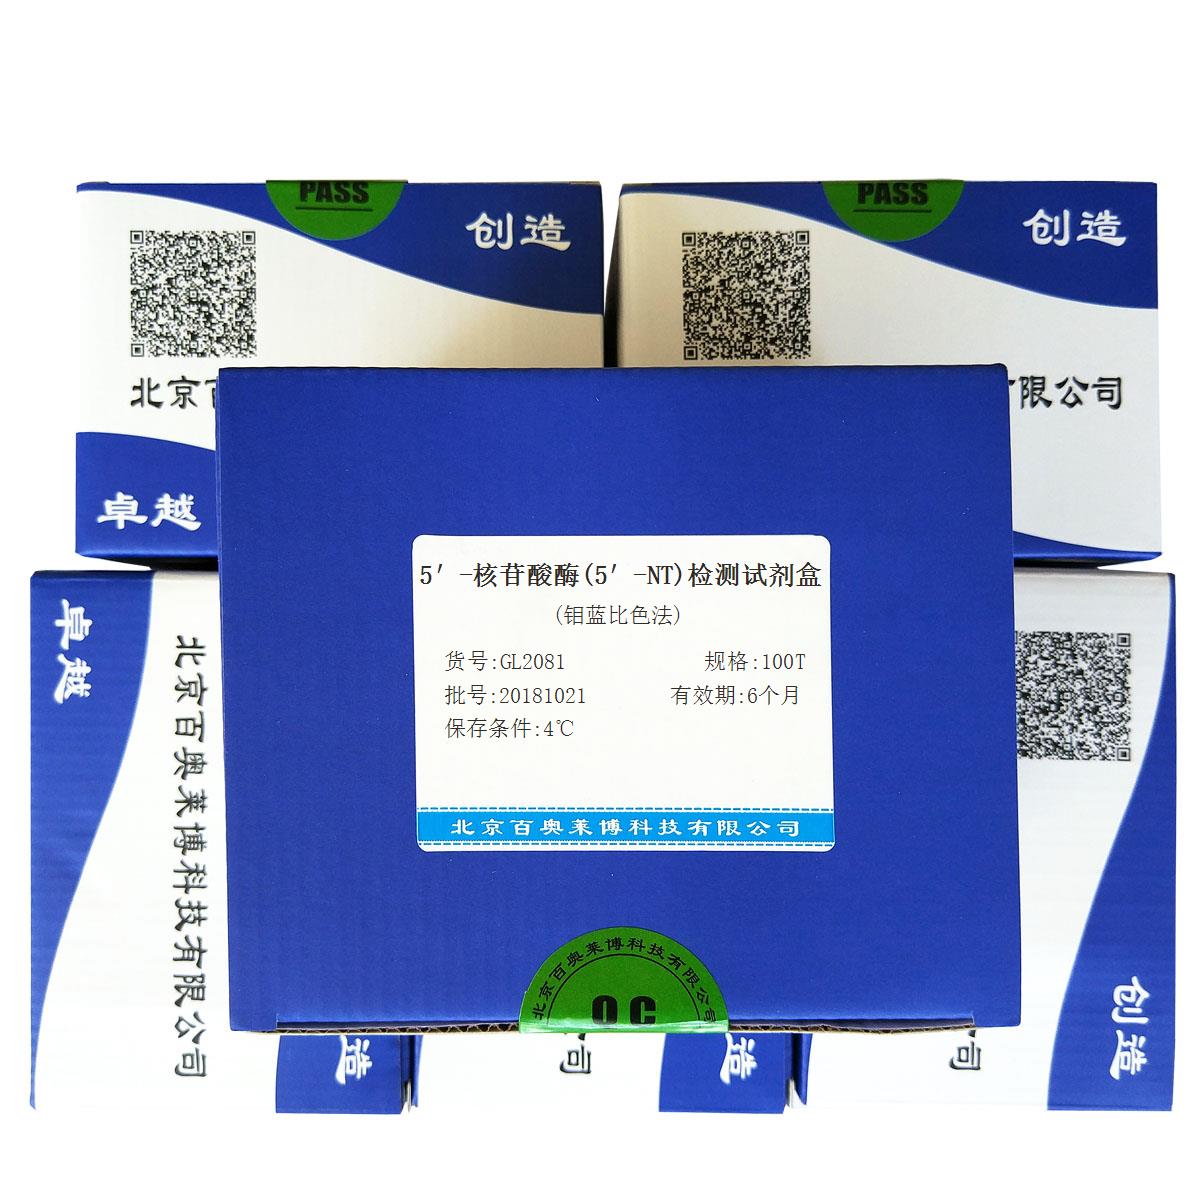 5′-核苷酸酶(5′-NT)检测试剂盒(钼蓝比色法)